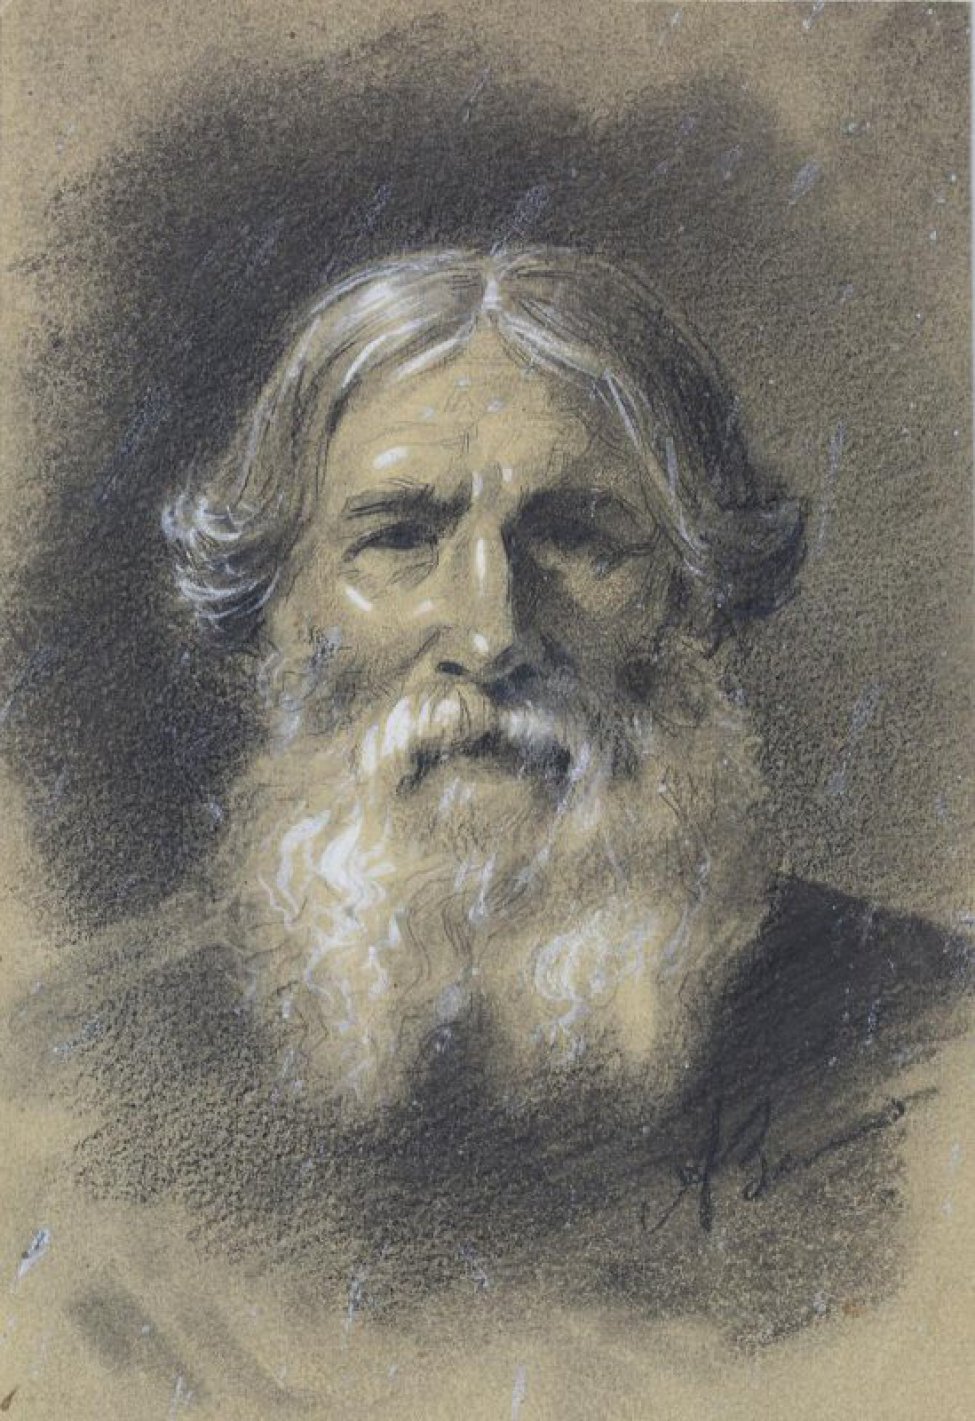 Изображен погрудно, лицом к зрителю, старик с седой бородой, прямым носом; волосы на прямой пробор под "кружок".